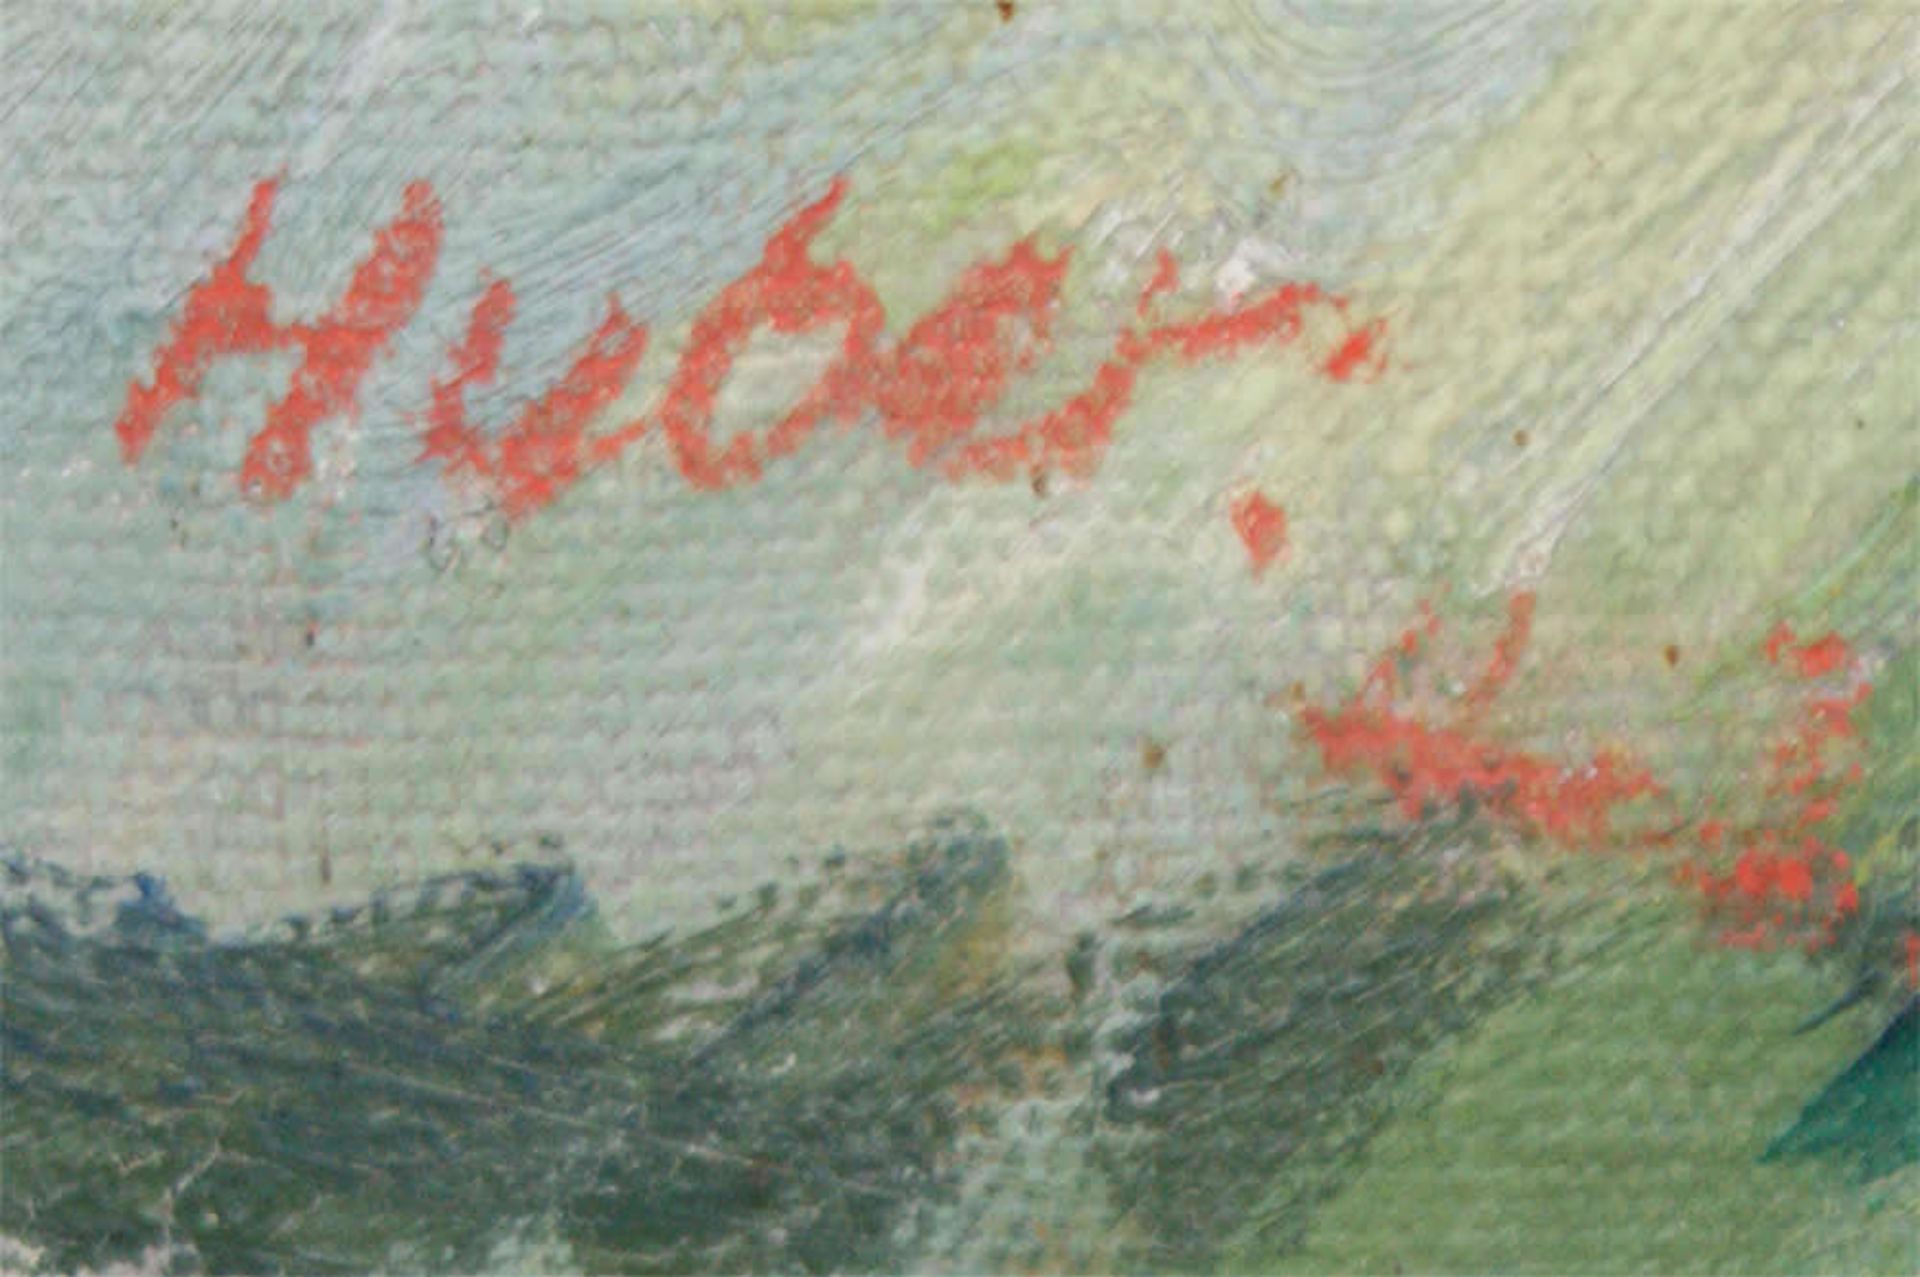 wohl Ernst Huber (1895-1960), Ölgemälde auf Leinwand, links Signatur Huber "Gewitterstimmung", - Bild 2 aus 3